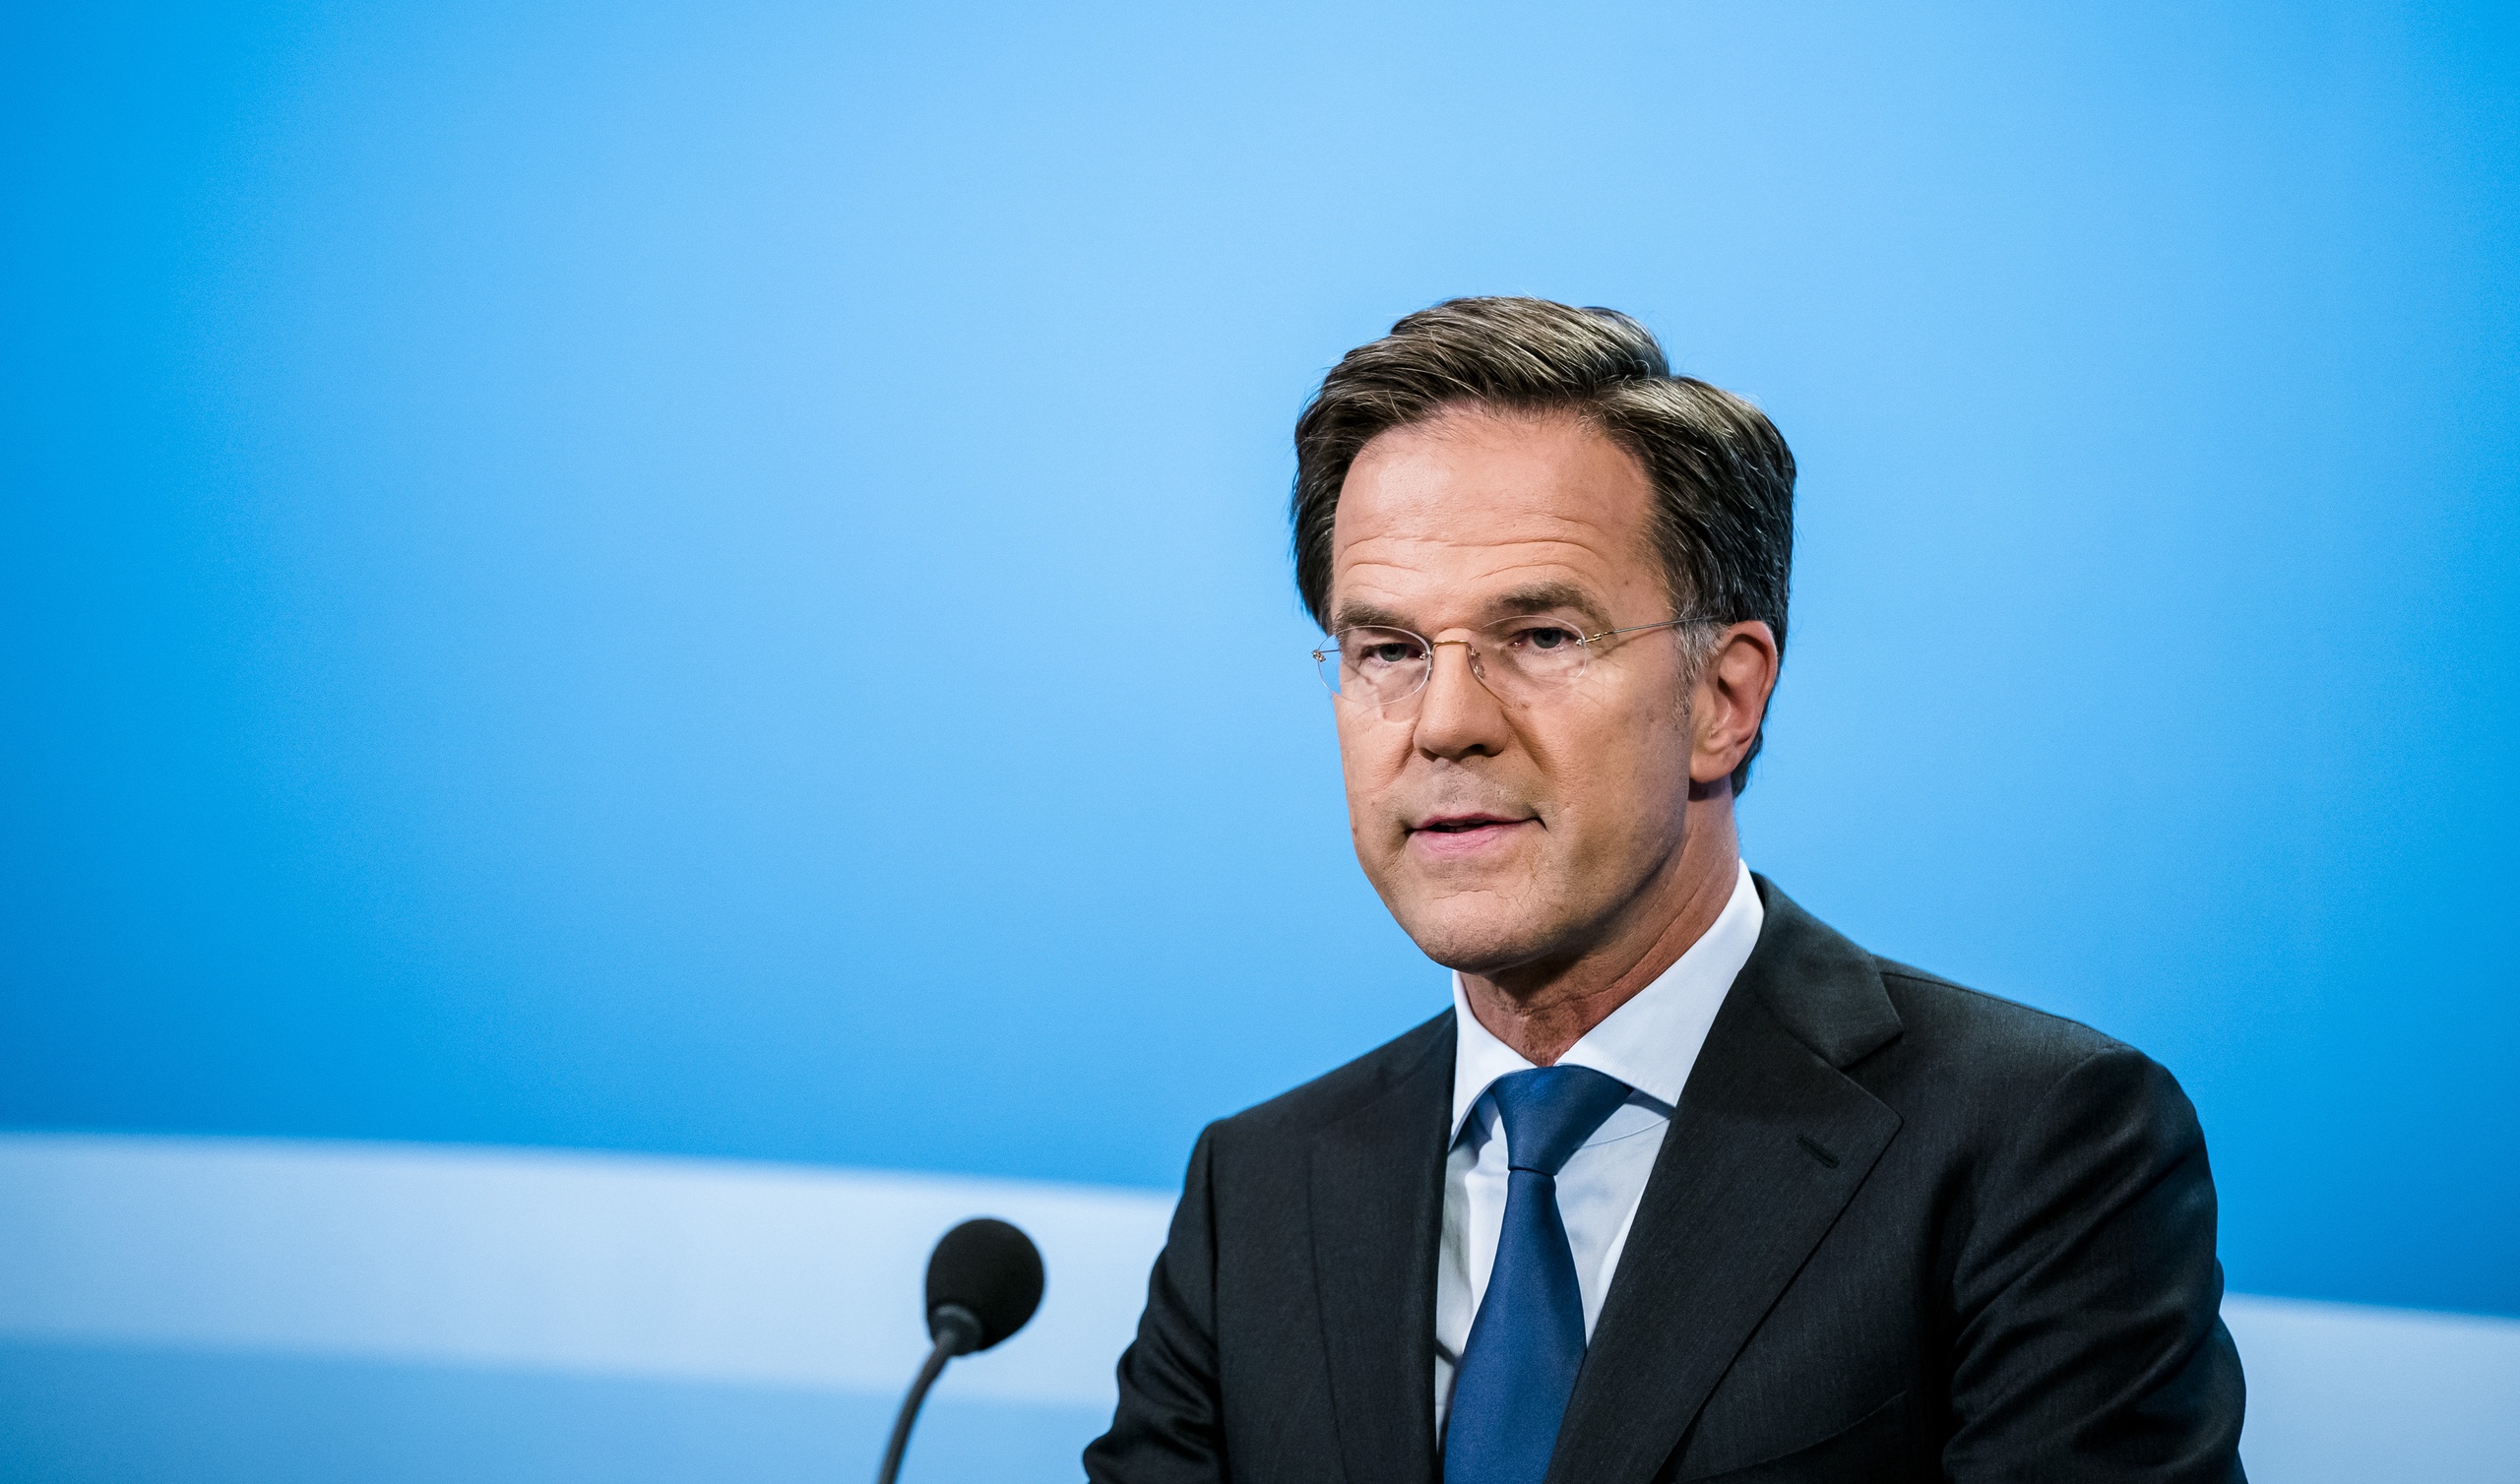 Sjoerd Sjoerdsma hoopt dat Mark Rutte het draagvlak verhoogt en eist 'Churchilliaans leiderschap' van de premier, zegt het Kamerlid in het BNR-programma De Wereld.